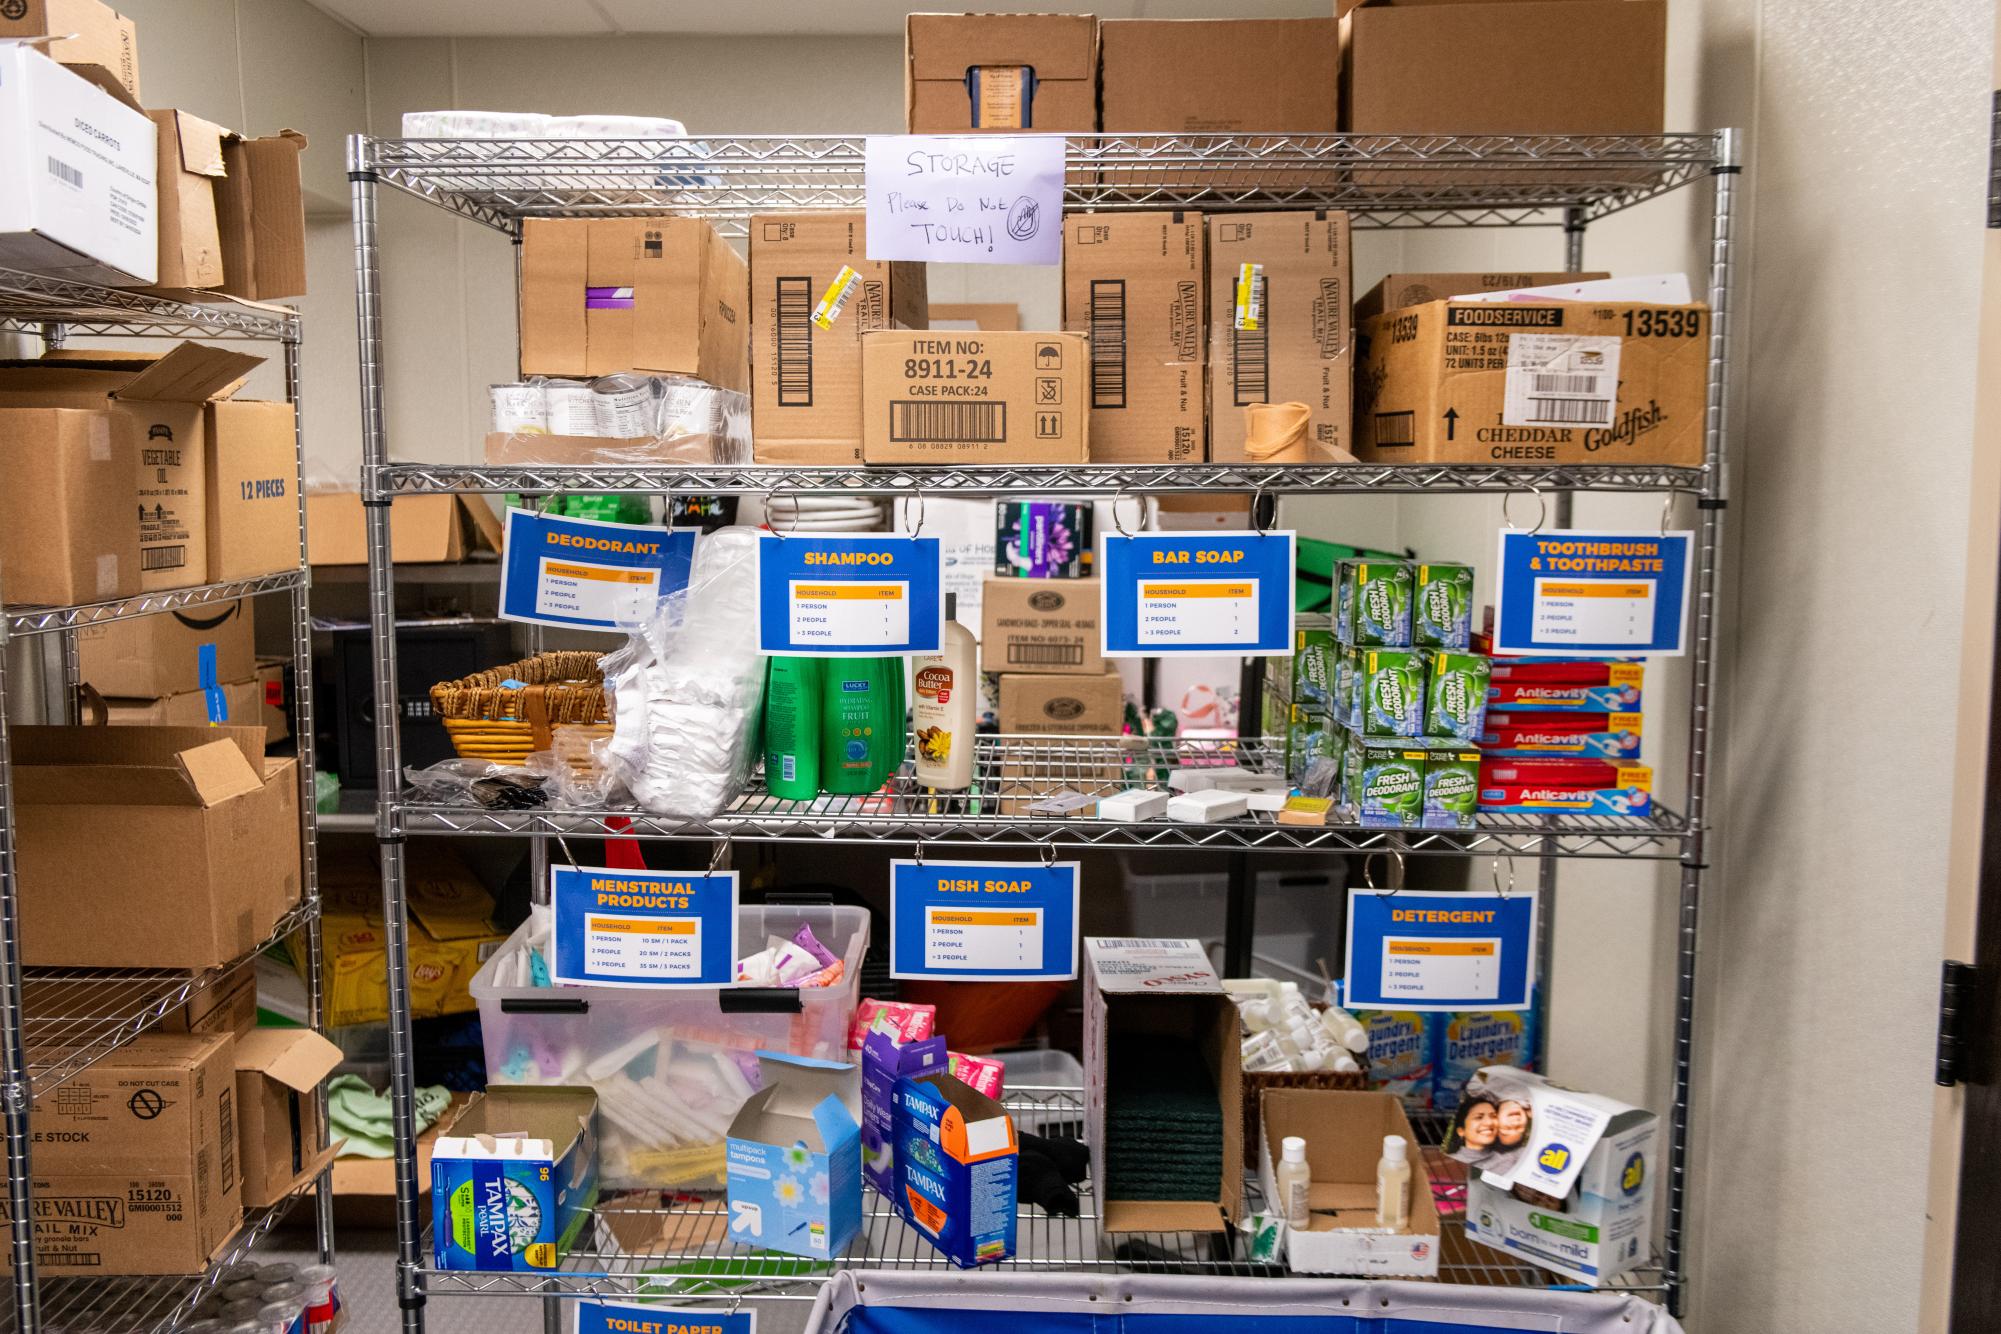 皮特食品储藏室与学生食品不安全作斗争